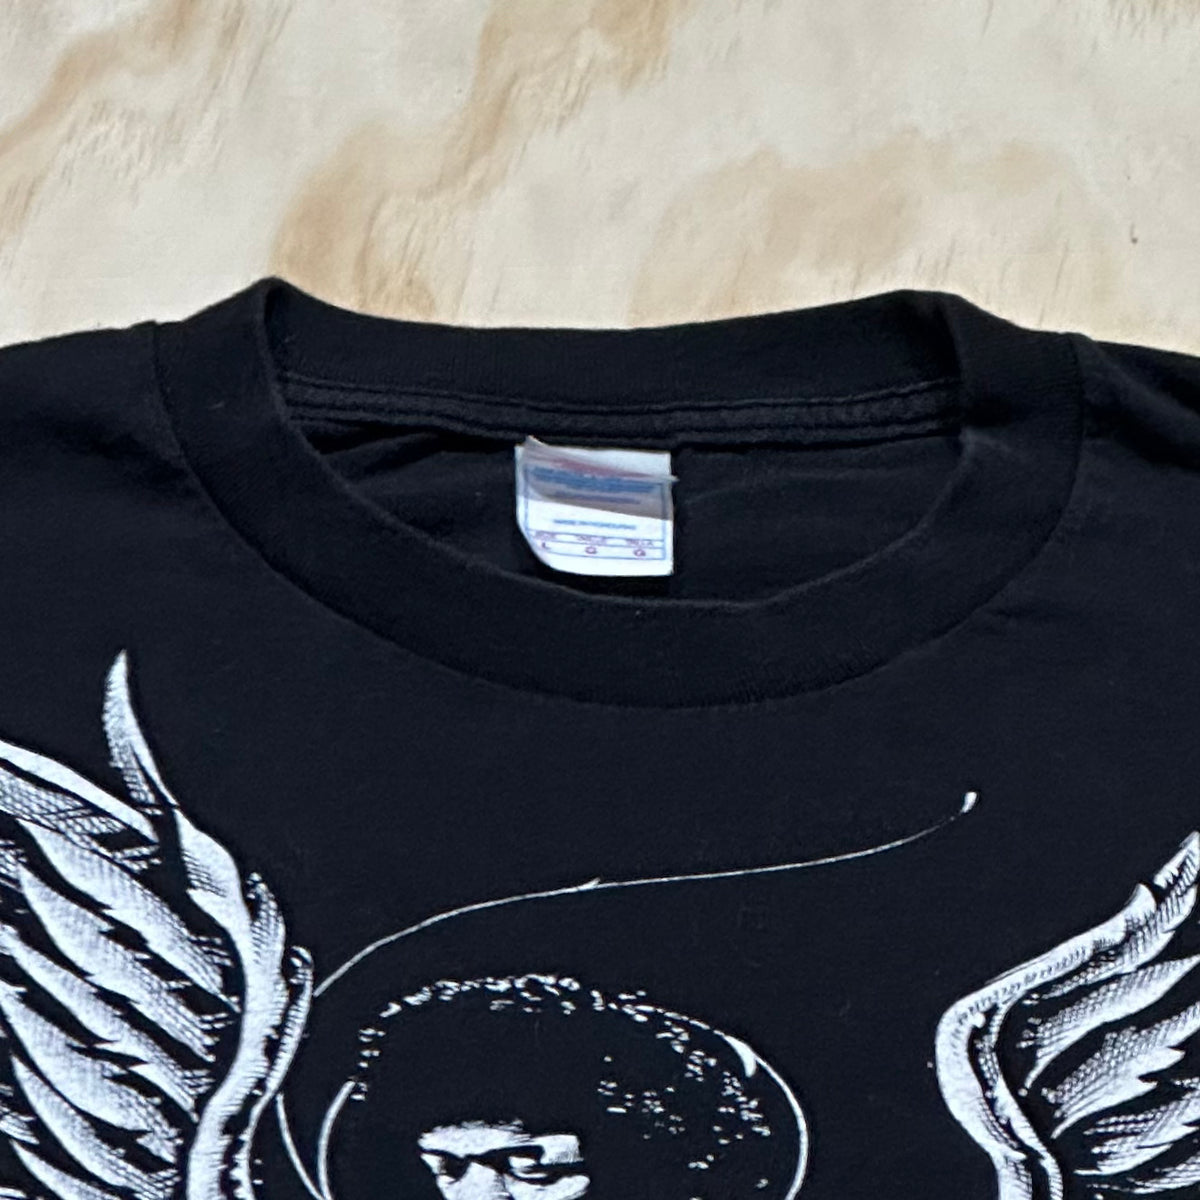 2007 Vintage Jimi Hendrix t-shirt